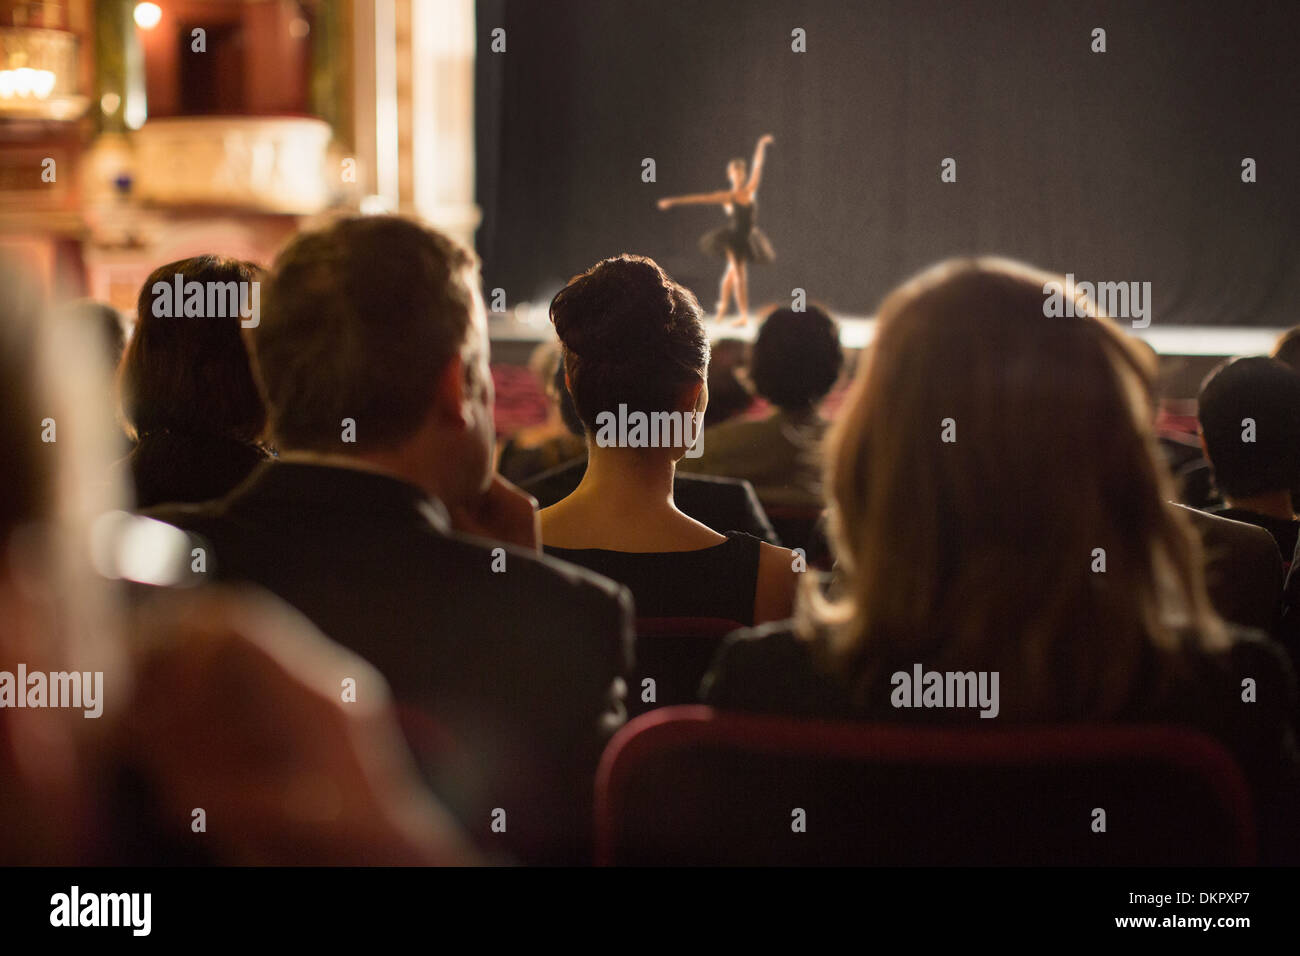 Vista trasera del teatro público viendo los ejecutantes en el escenario Foto de stock